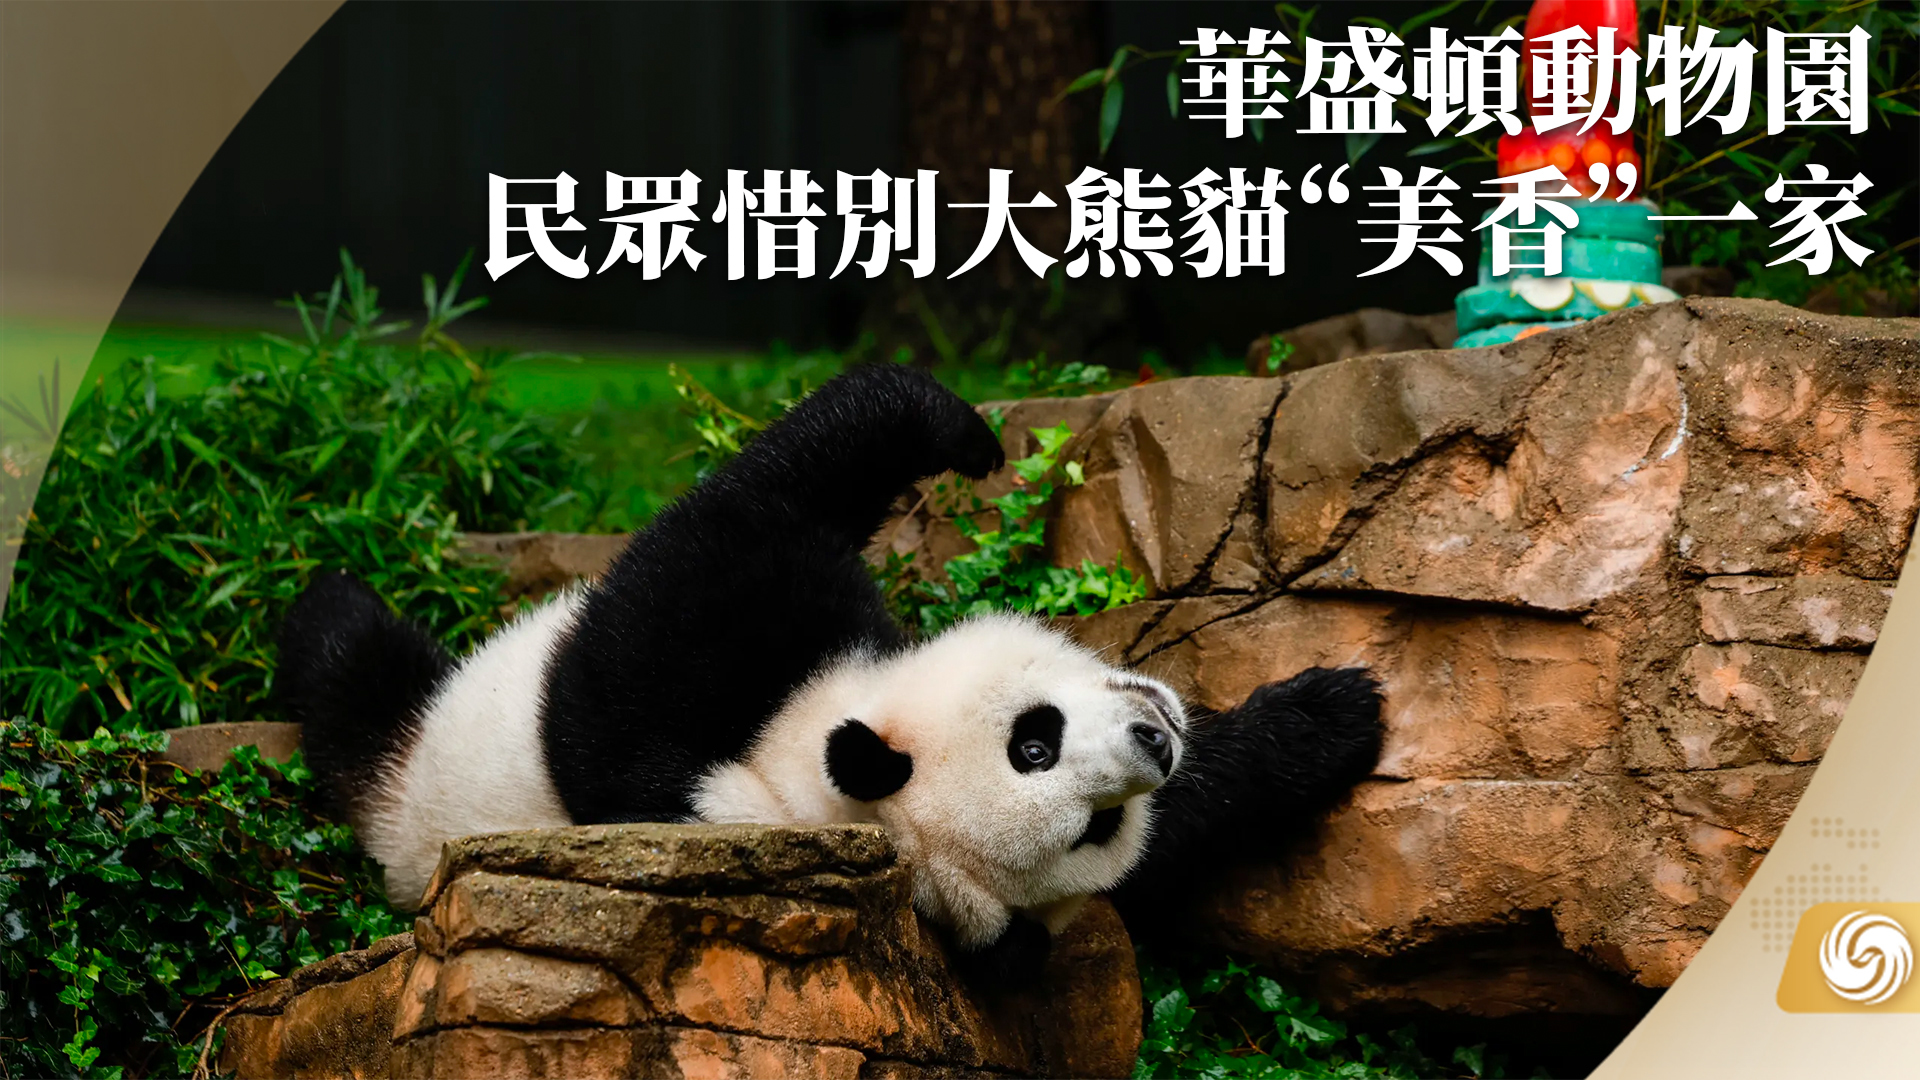 顺利回家！大熊猫“美香”一家正在适应新环境新生活 _www.isenlin.cn